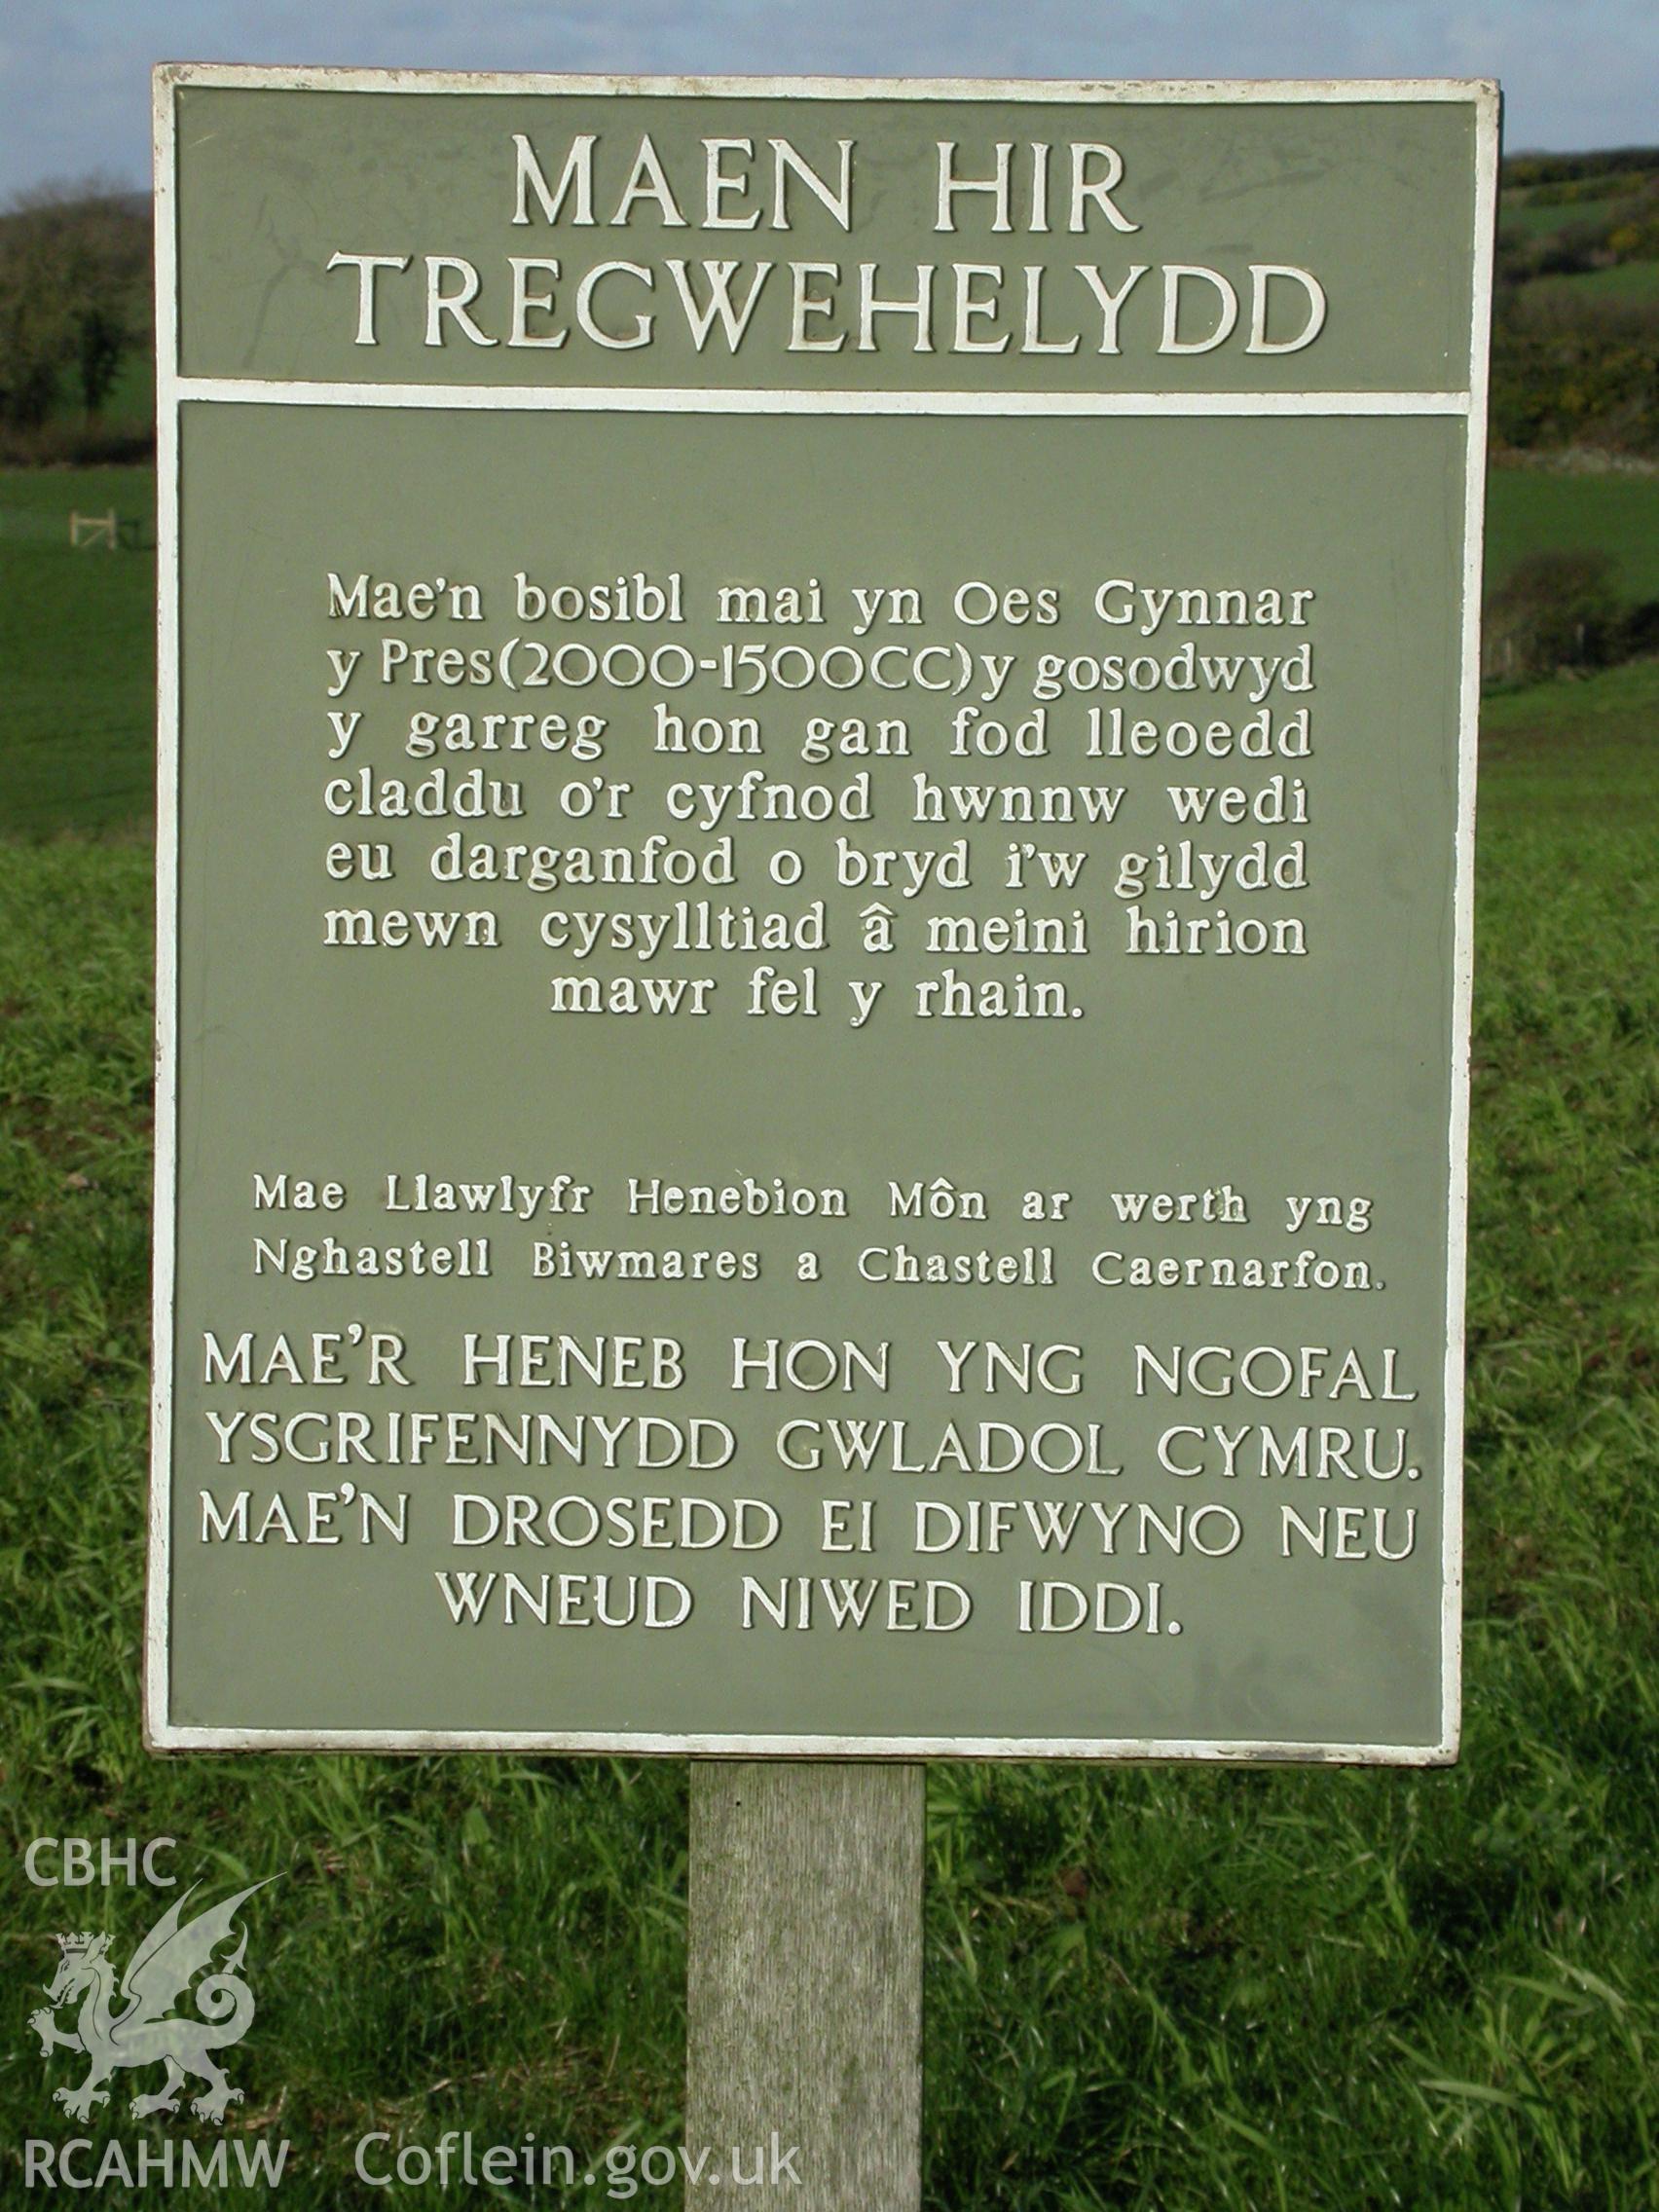 Tregwhelydd Standing Stone, Welsh language public notice.